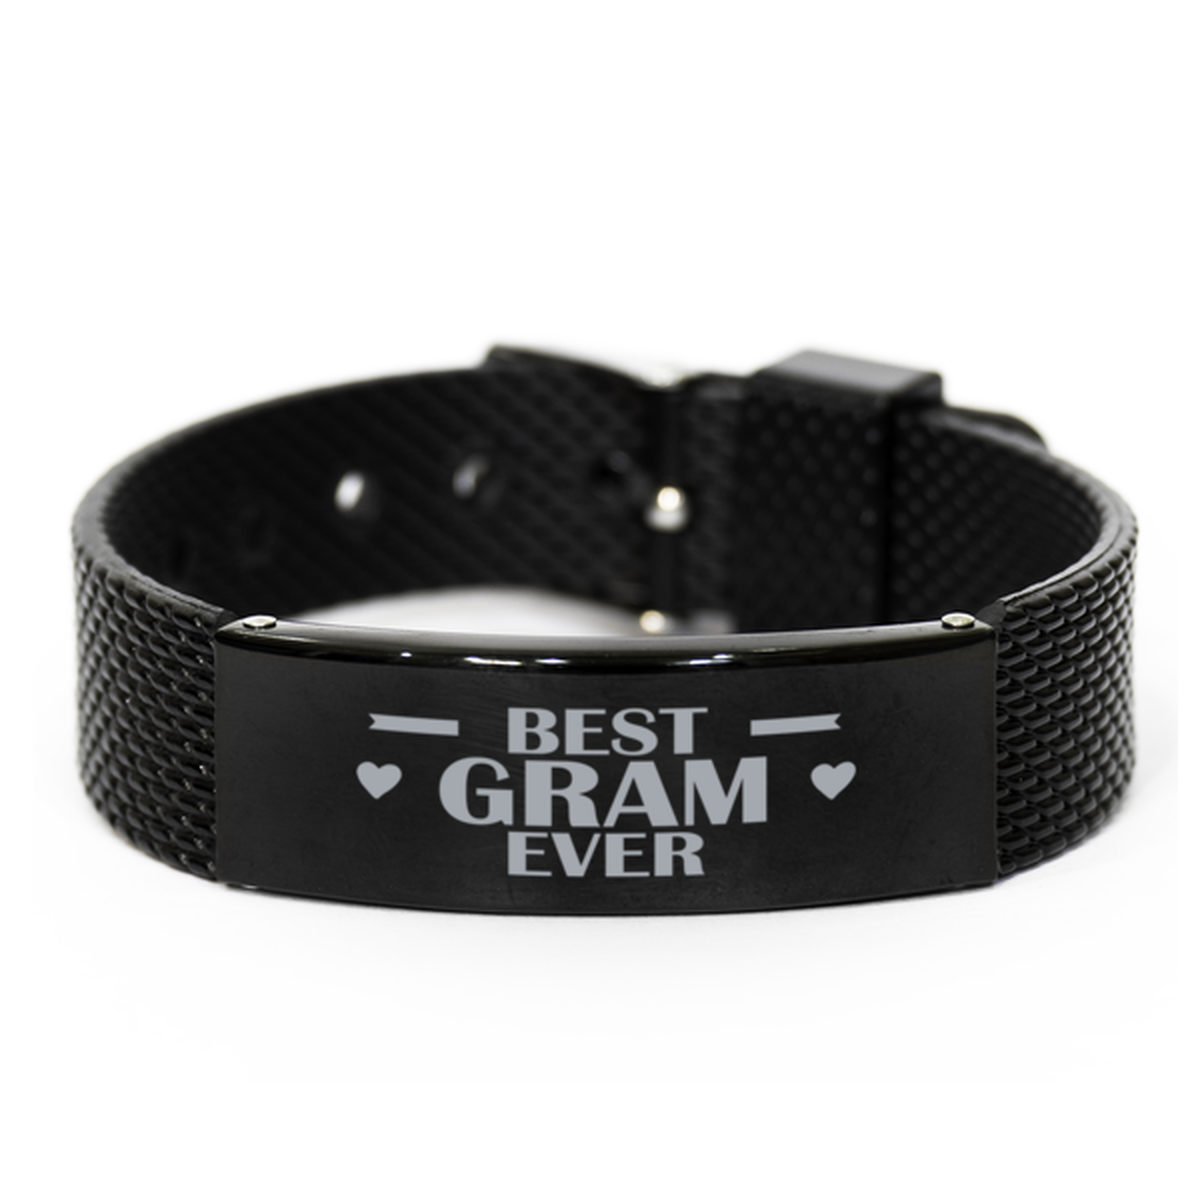 Best Gram Ever Gram Gifts, Gag Engraved Bracelet For Gram, Best Family Gifts For Women